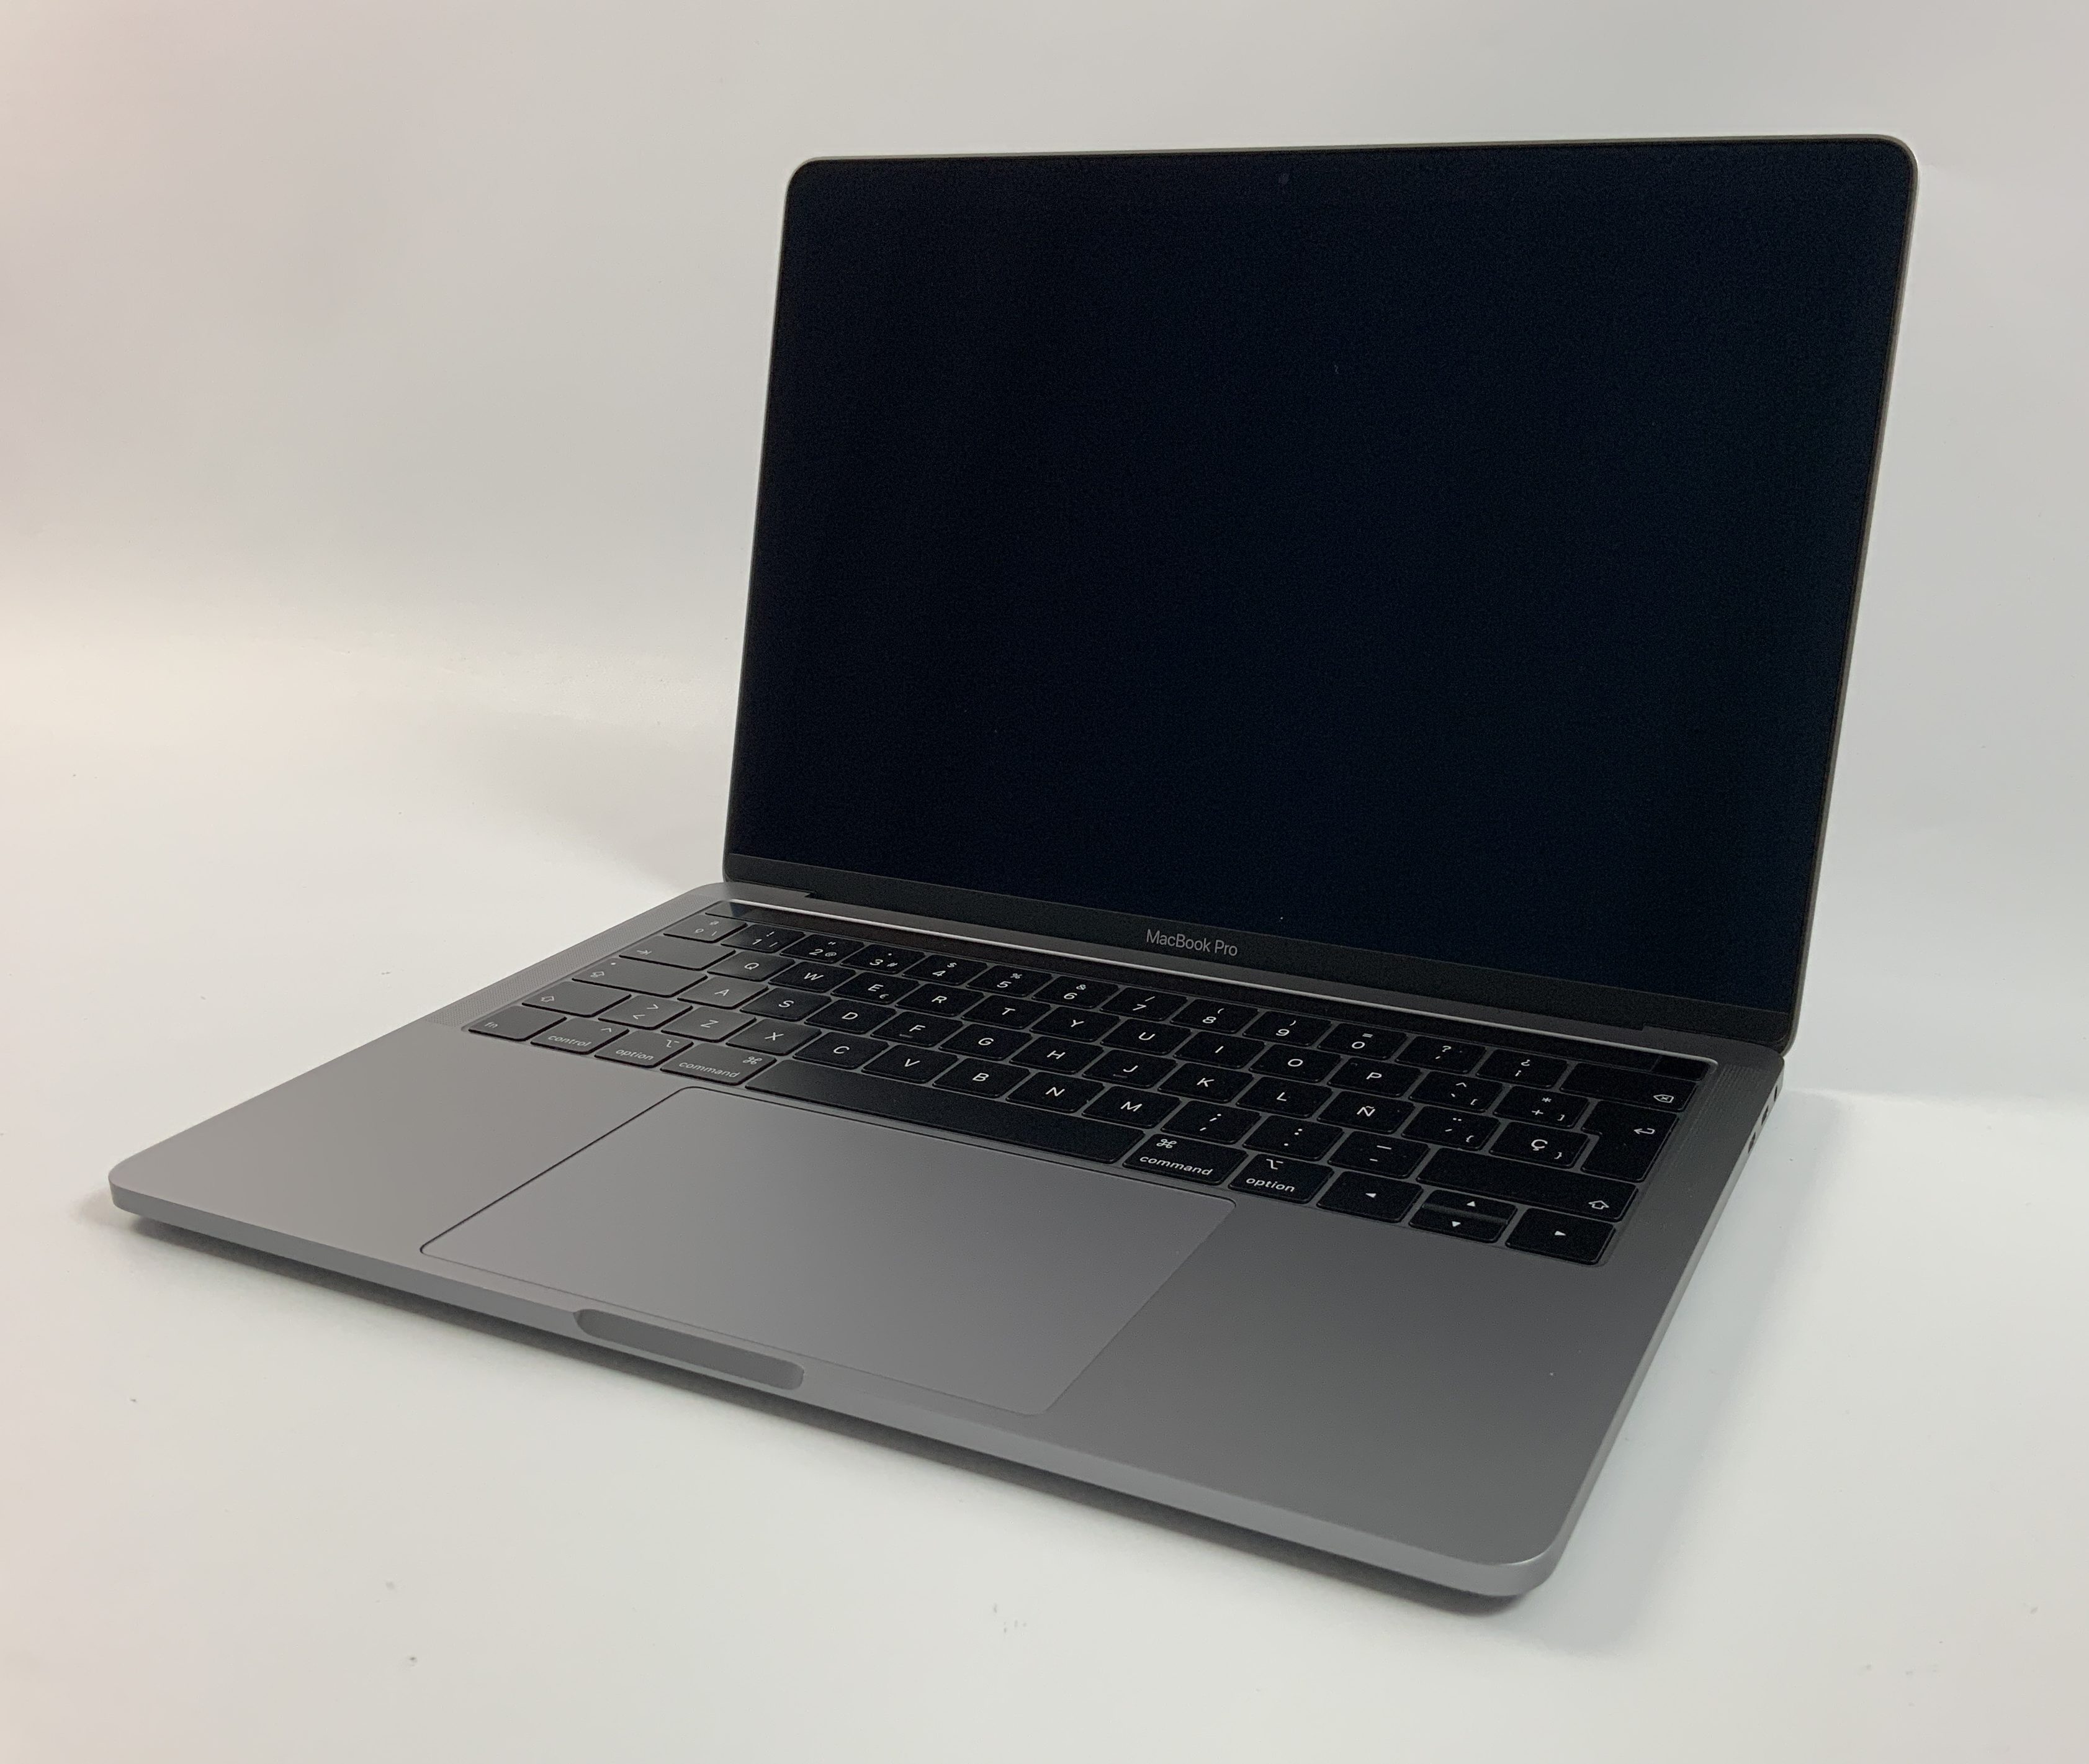 MacBook Pro 13" 4TBT Mid 2018 (Intel Quad-Core i5 2.3 GHz 8 GB RAM 512 GB SSD), Space Gray, Intel Quad-Core i5 2.3 GHz, 8 GB RAM, 512 GB SSD, Afbeelding 1